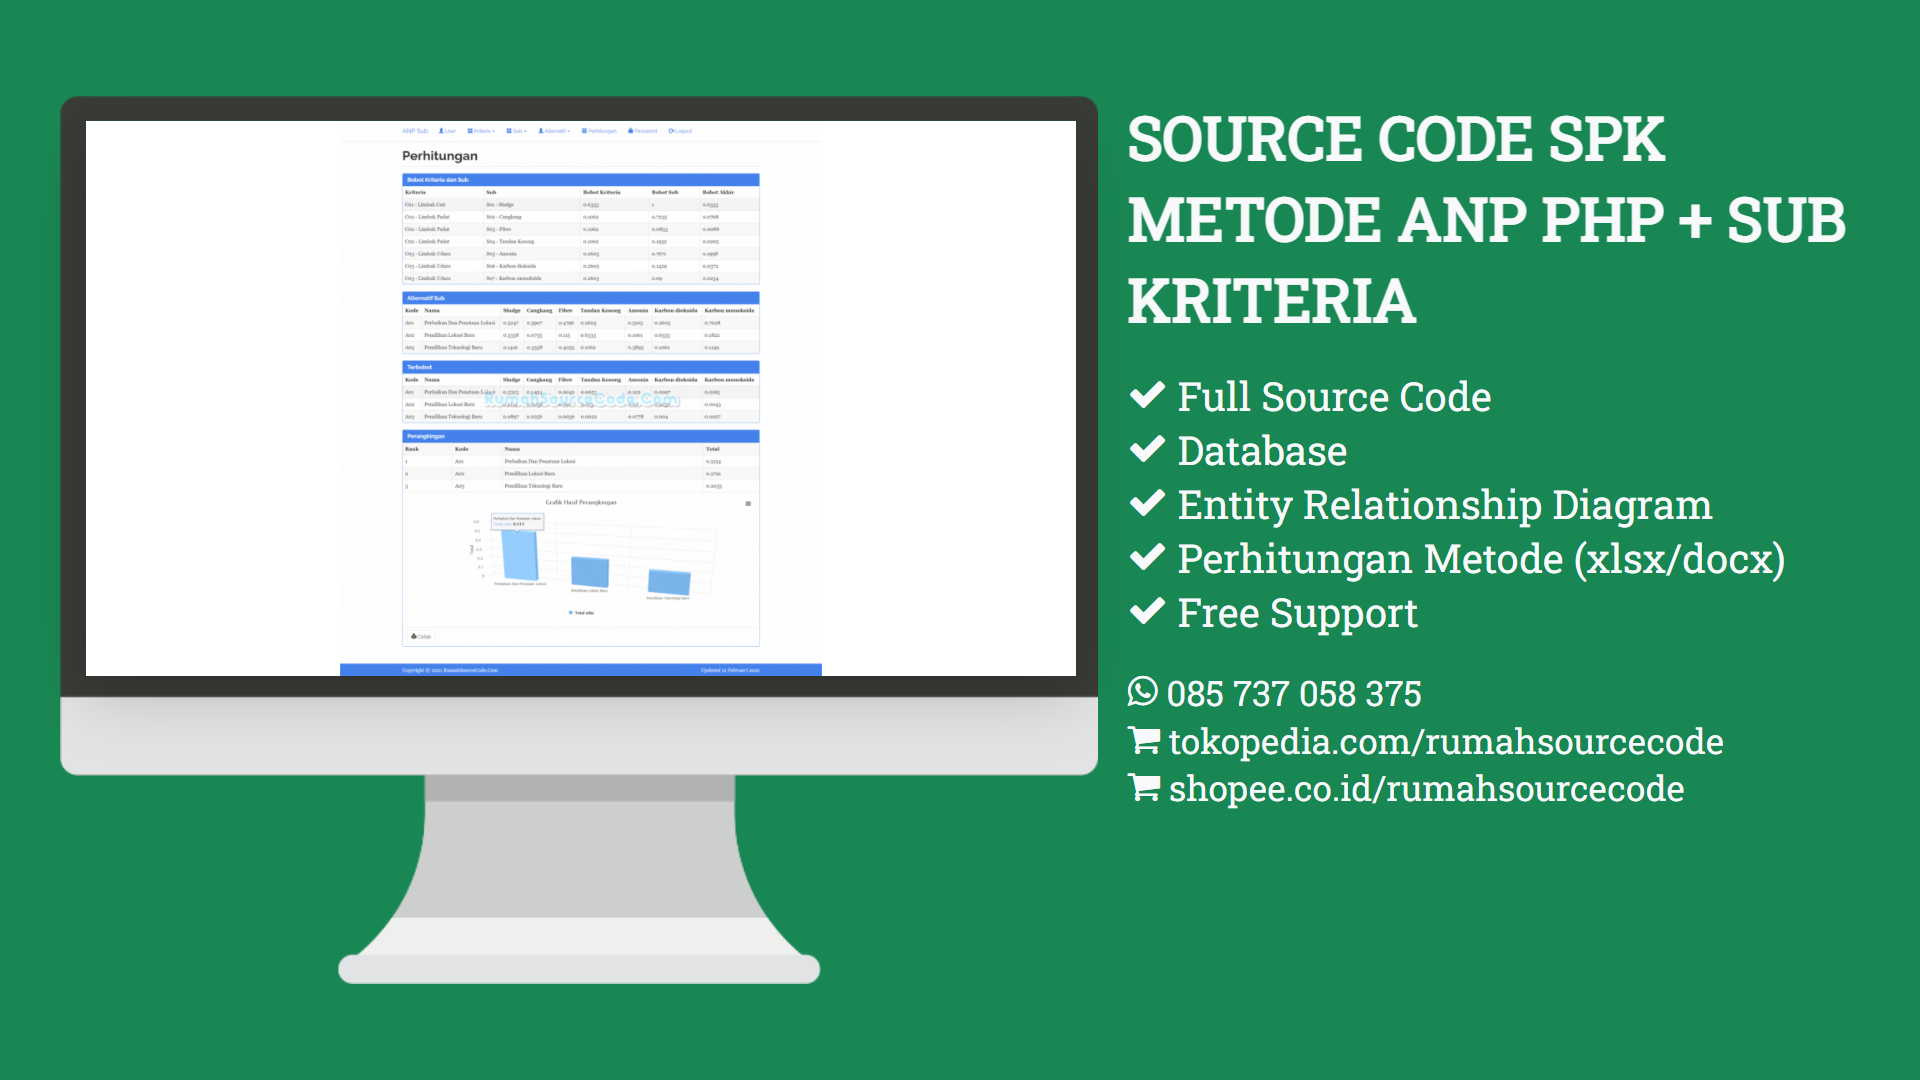 Source Code SPK Metode ANP PHP + Sub Kriteria